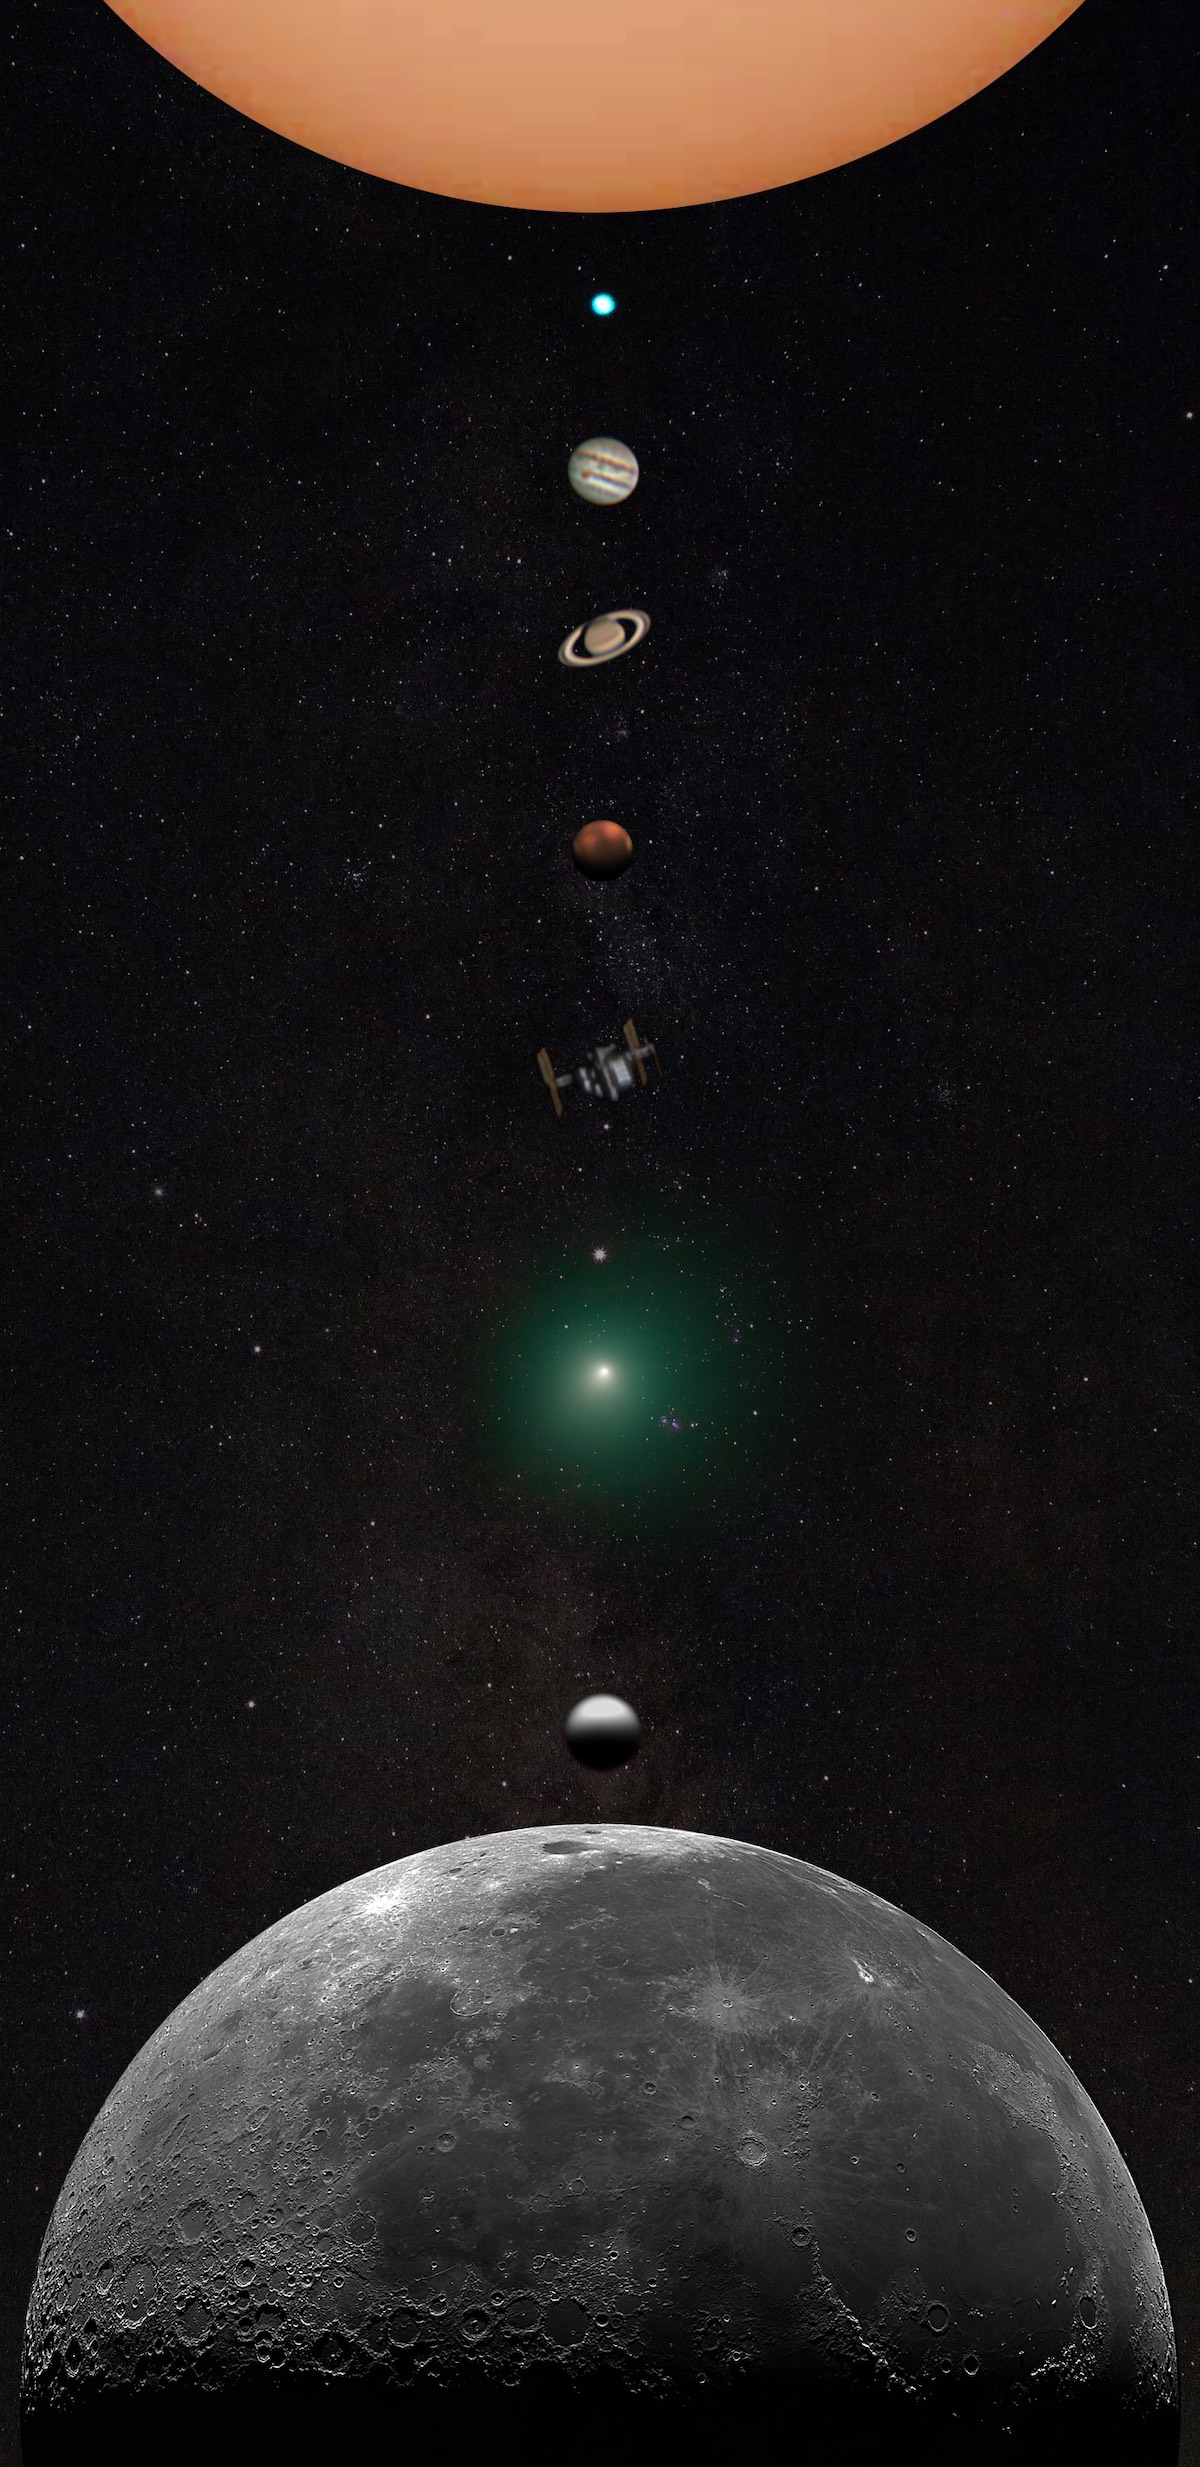 fotografía del sistema solar compuesta